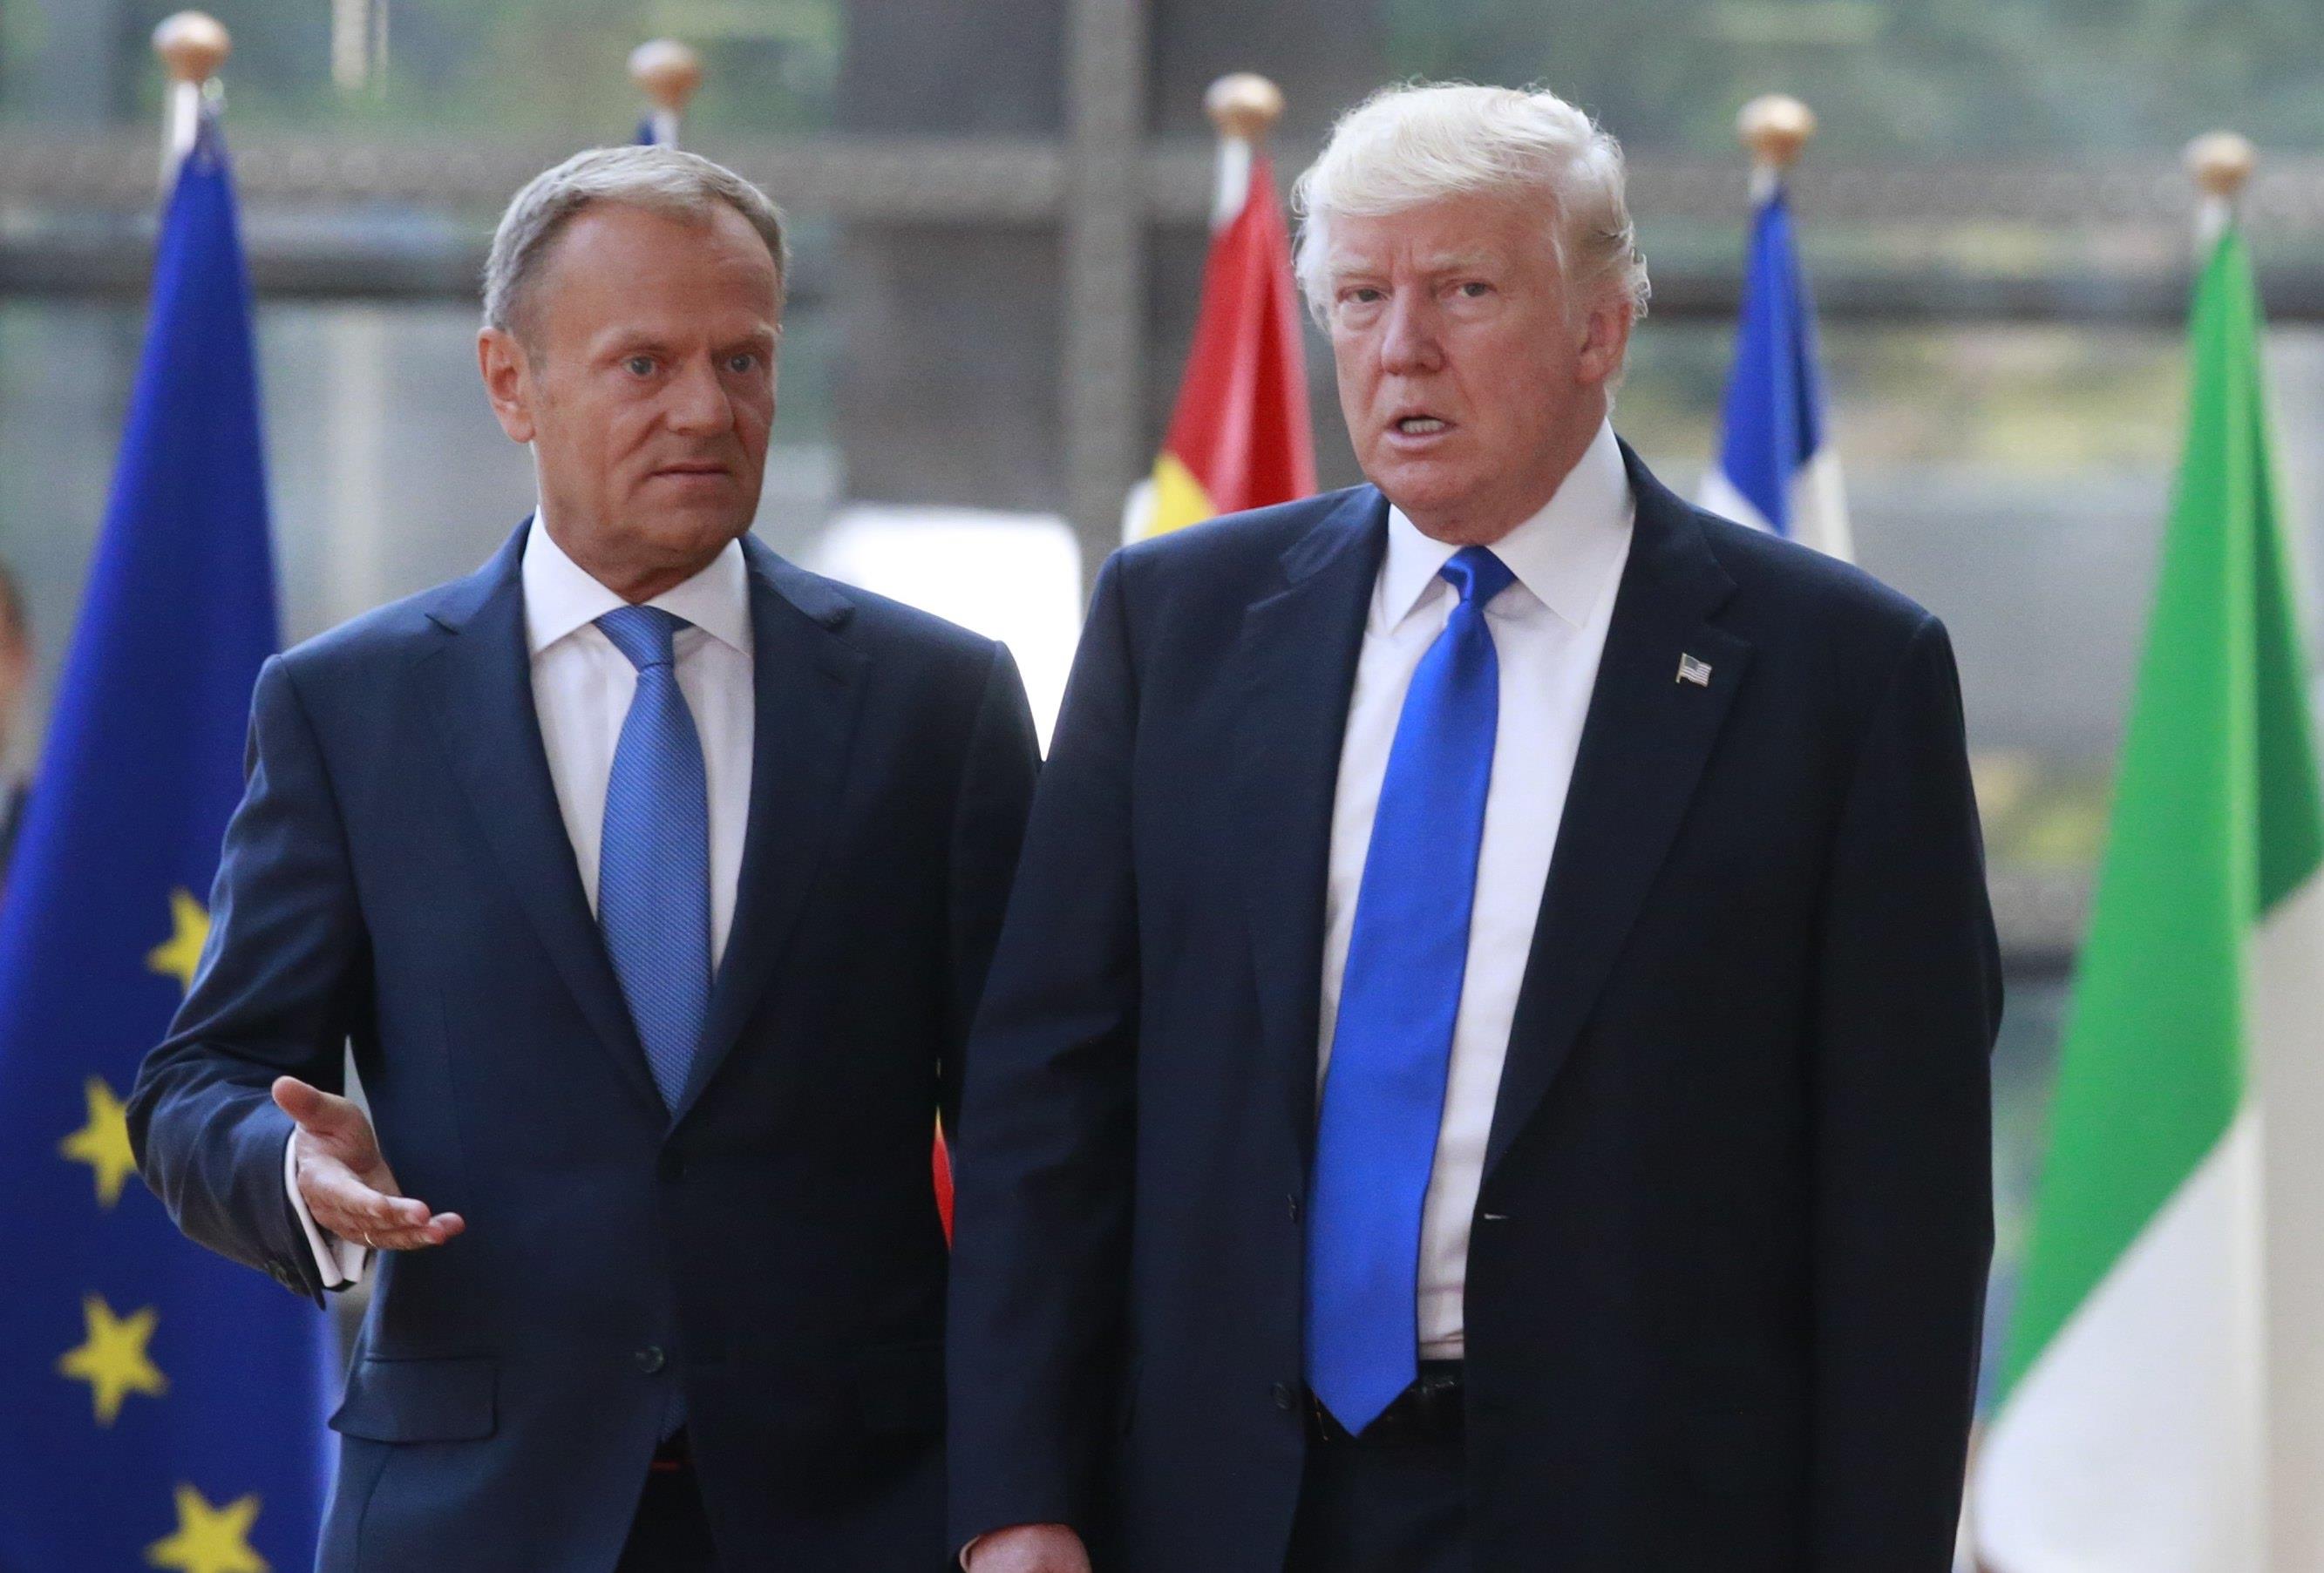 Βρυξέλλες: Τραμπ και ΕΕ διαφωνούν για Ρωσία, εμπόριο και κλίμα